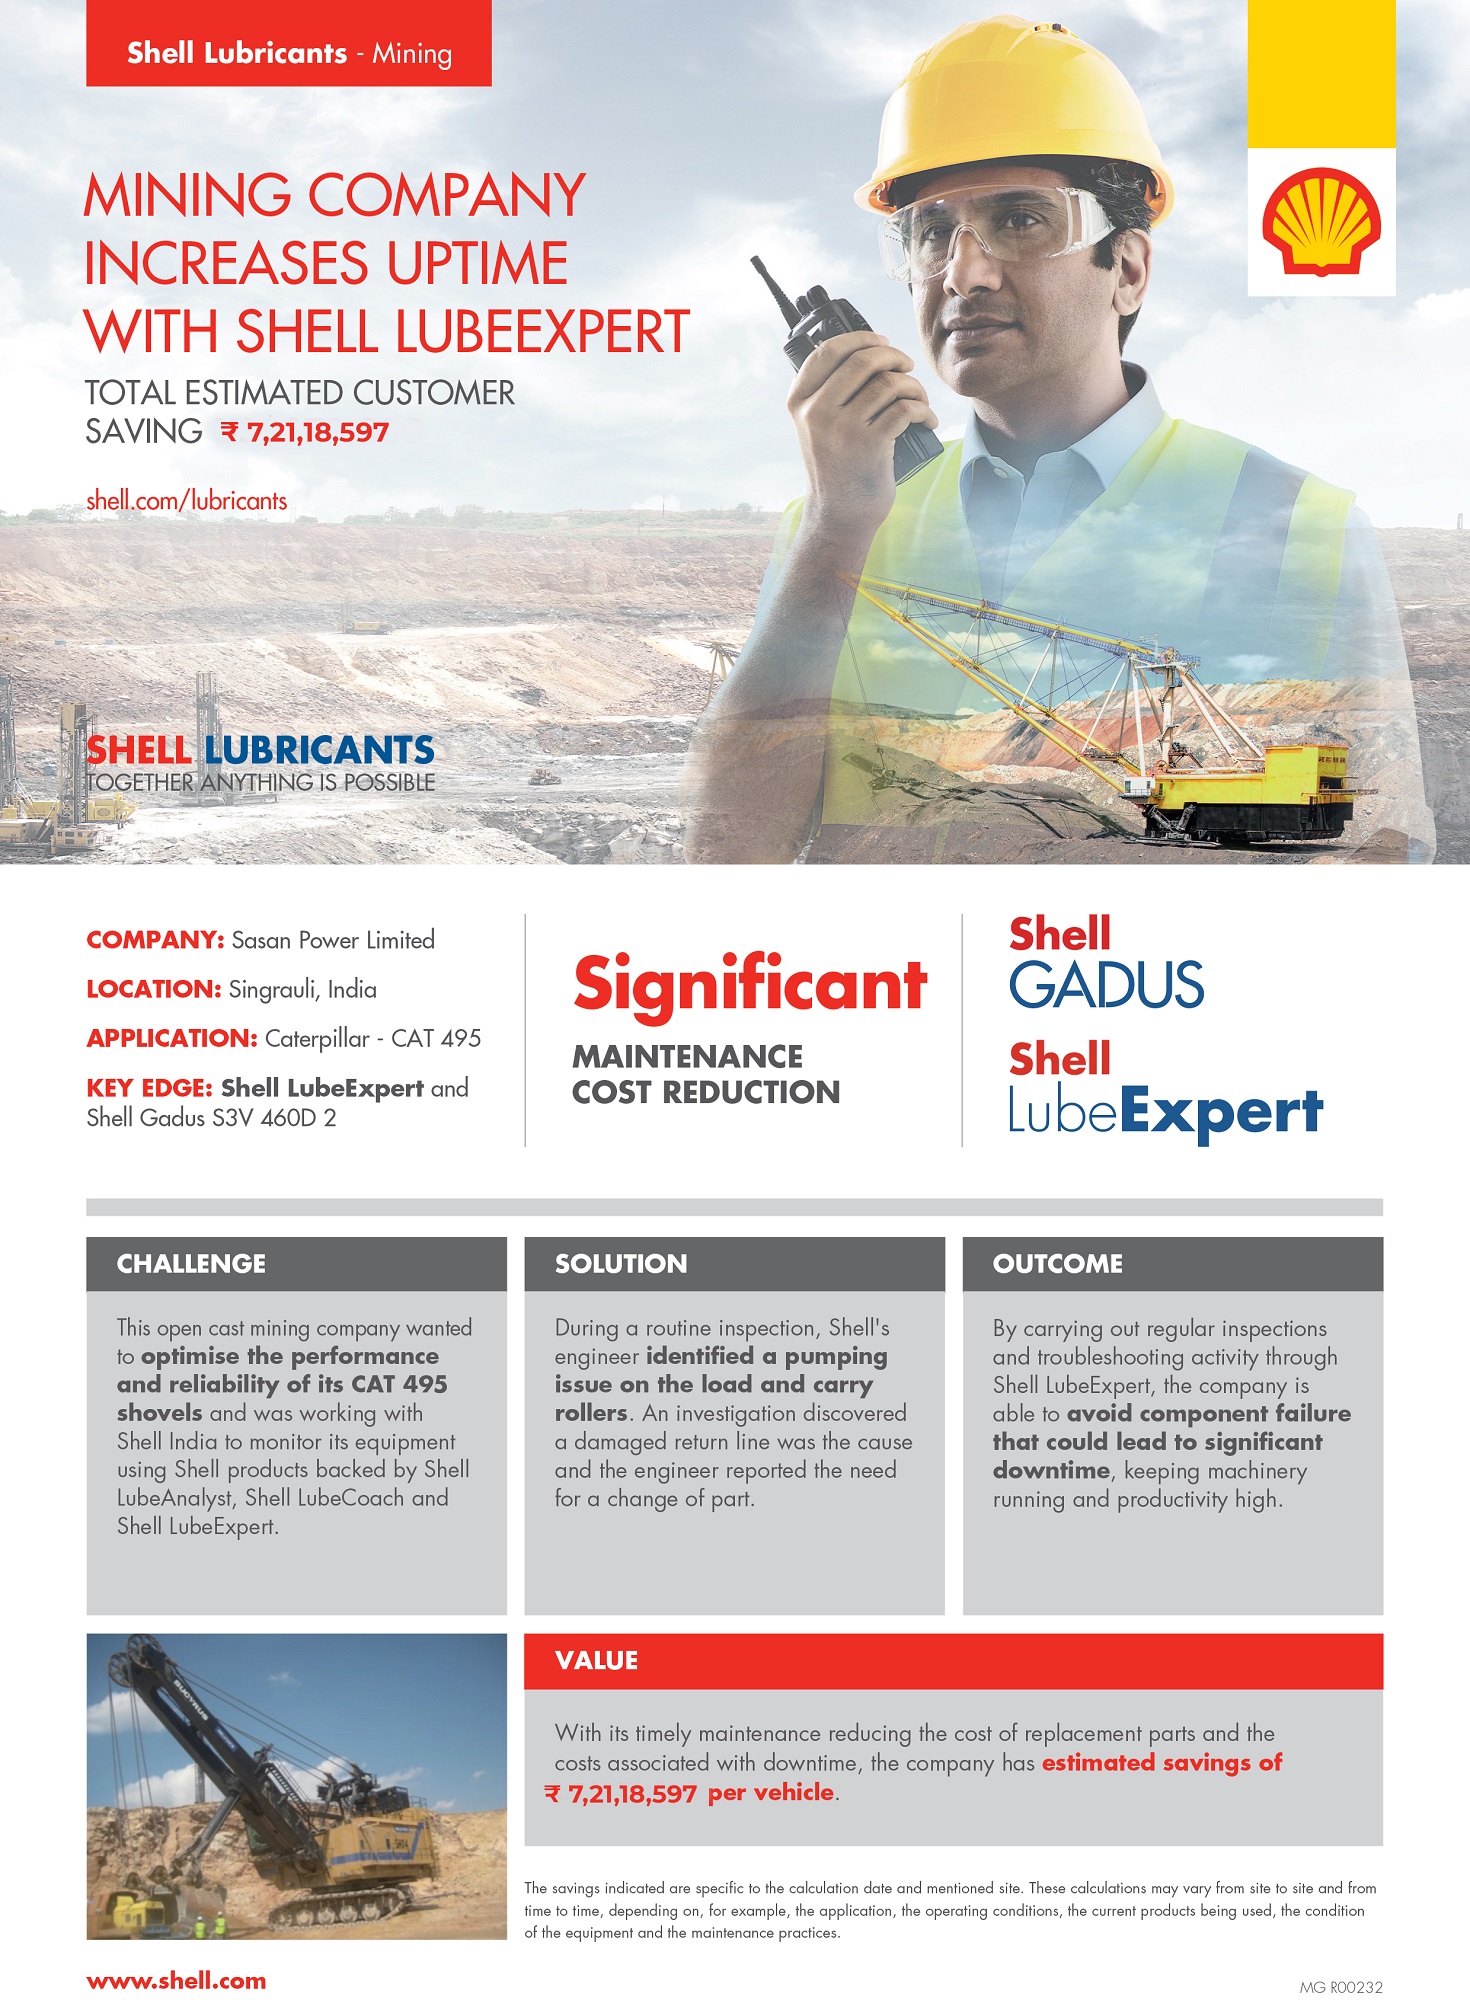 Shell LubeExpert